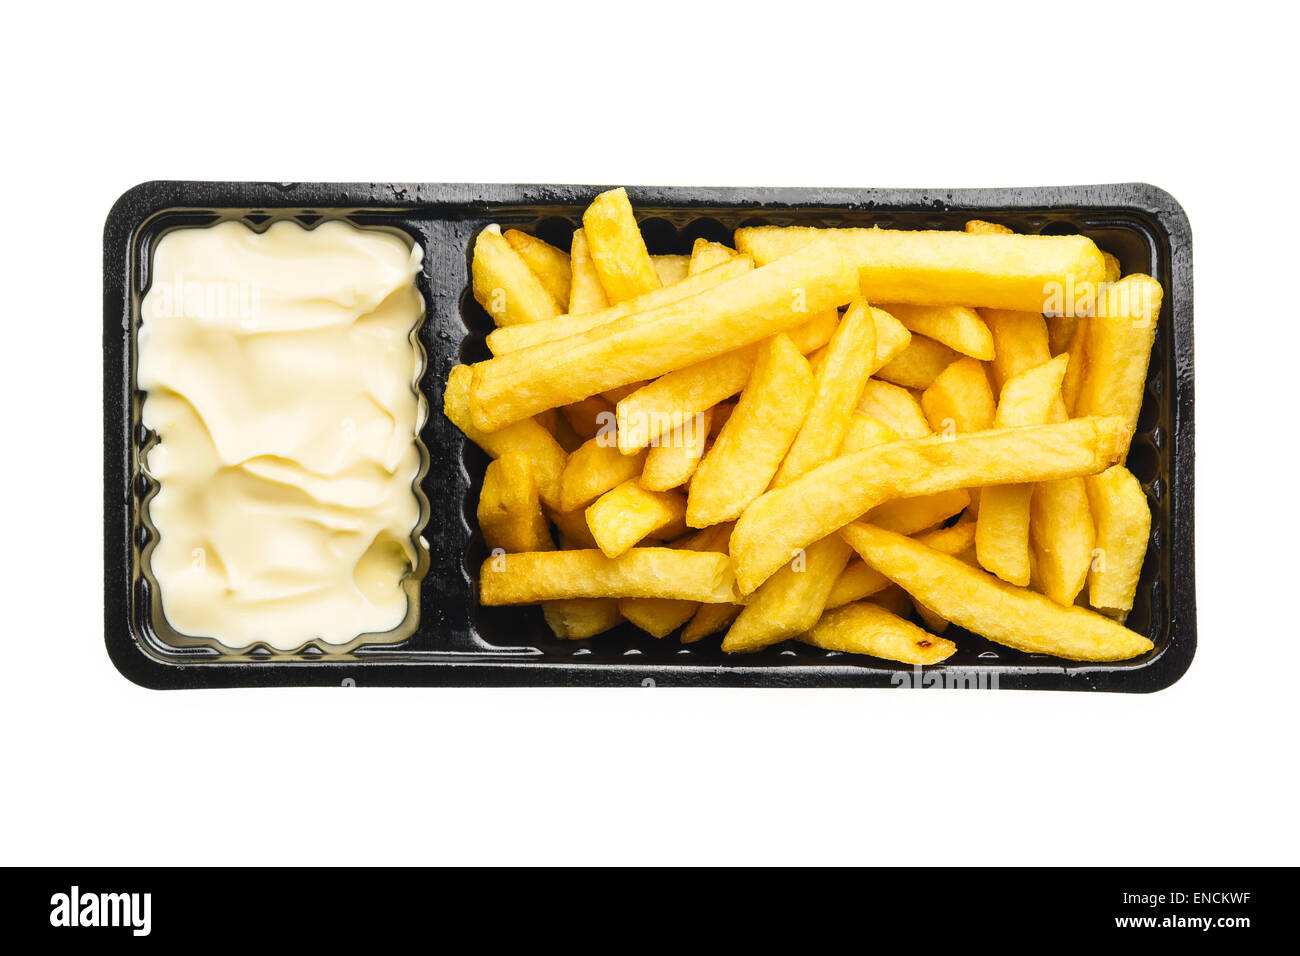 Patatas fritas con mayonesa, papas fritas de comida rápida típica en los Países Bajos y Bélgica. También llamado patat satisfechas. Foto de stock